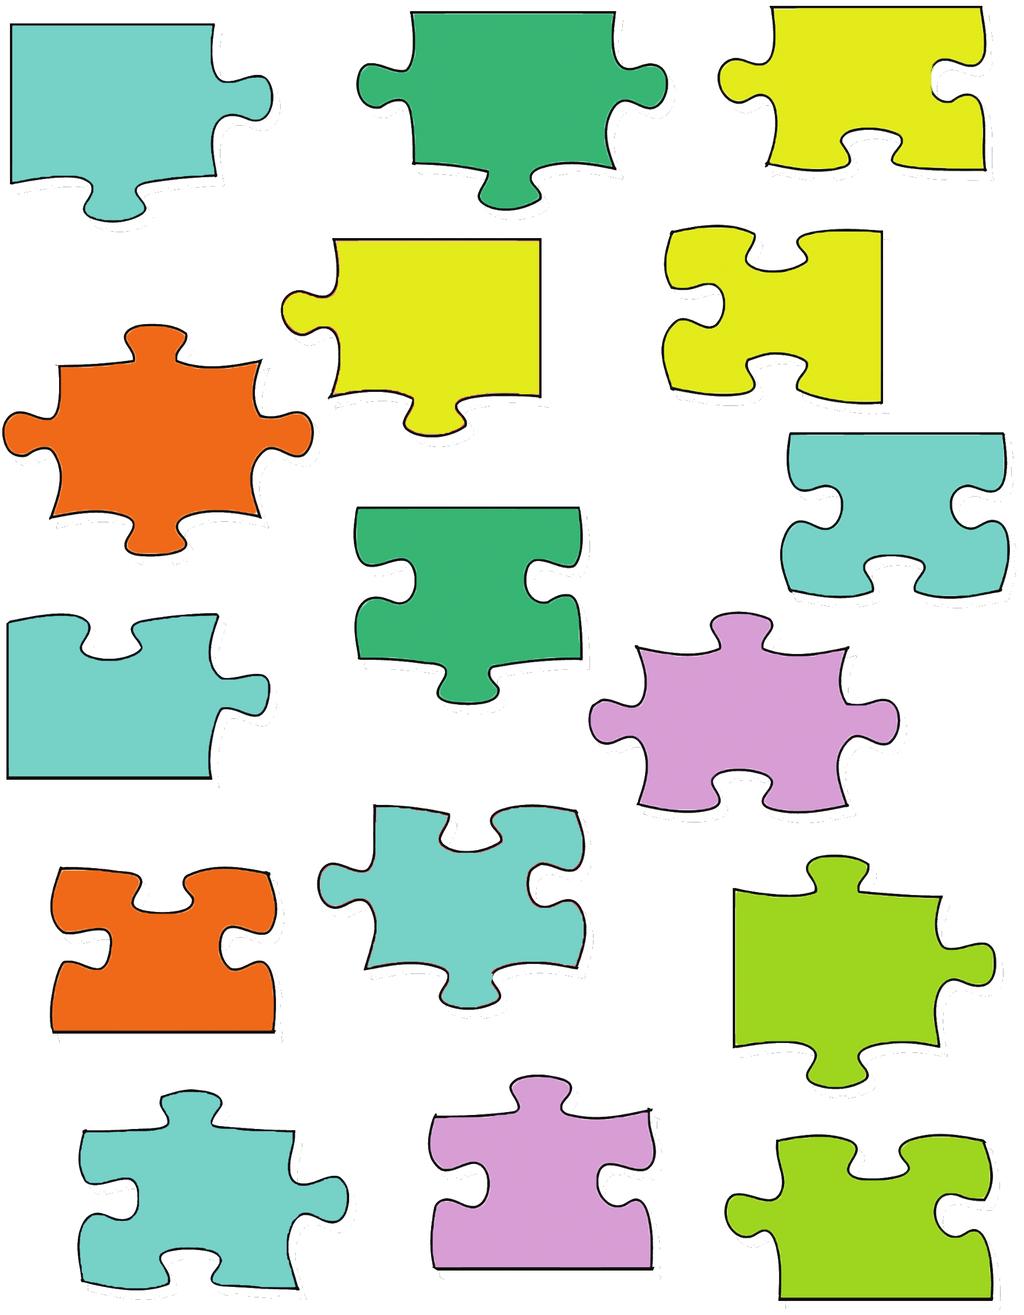 Takvim Aşağıda verilen puzzle parçalarındaki zaman